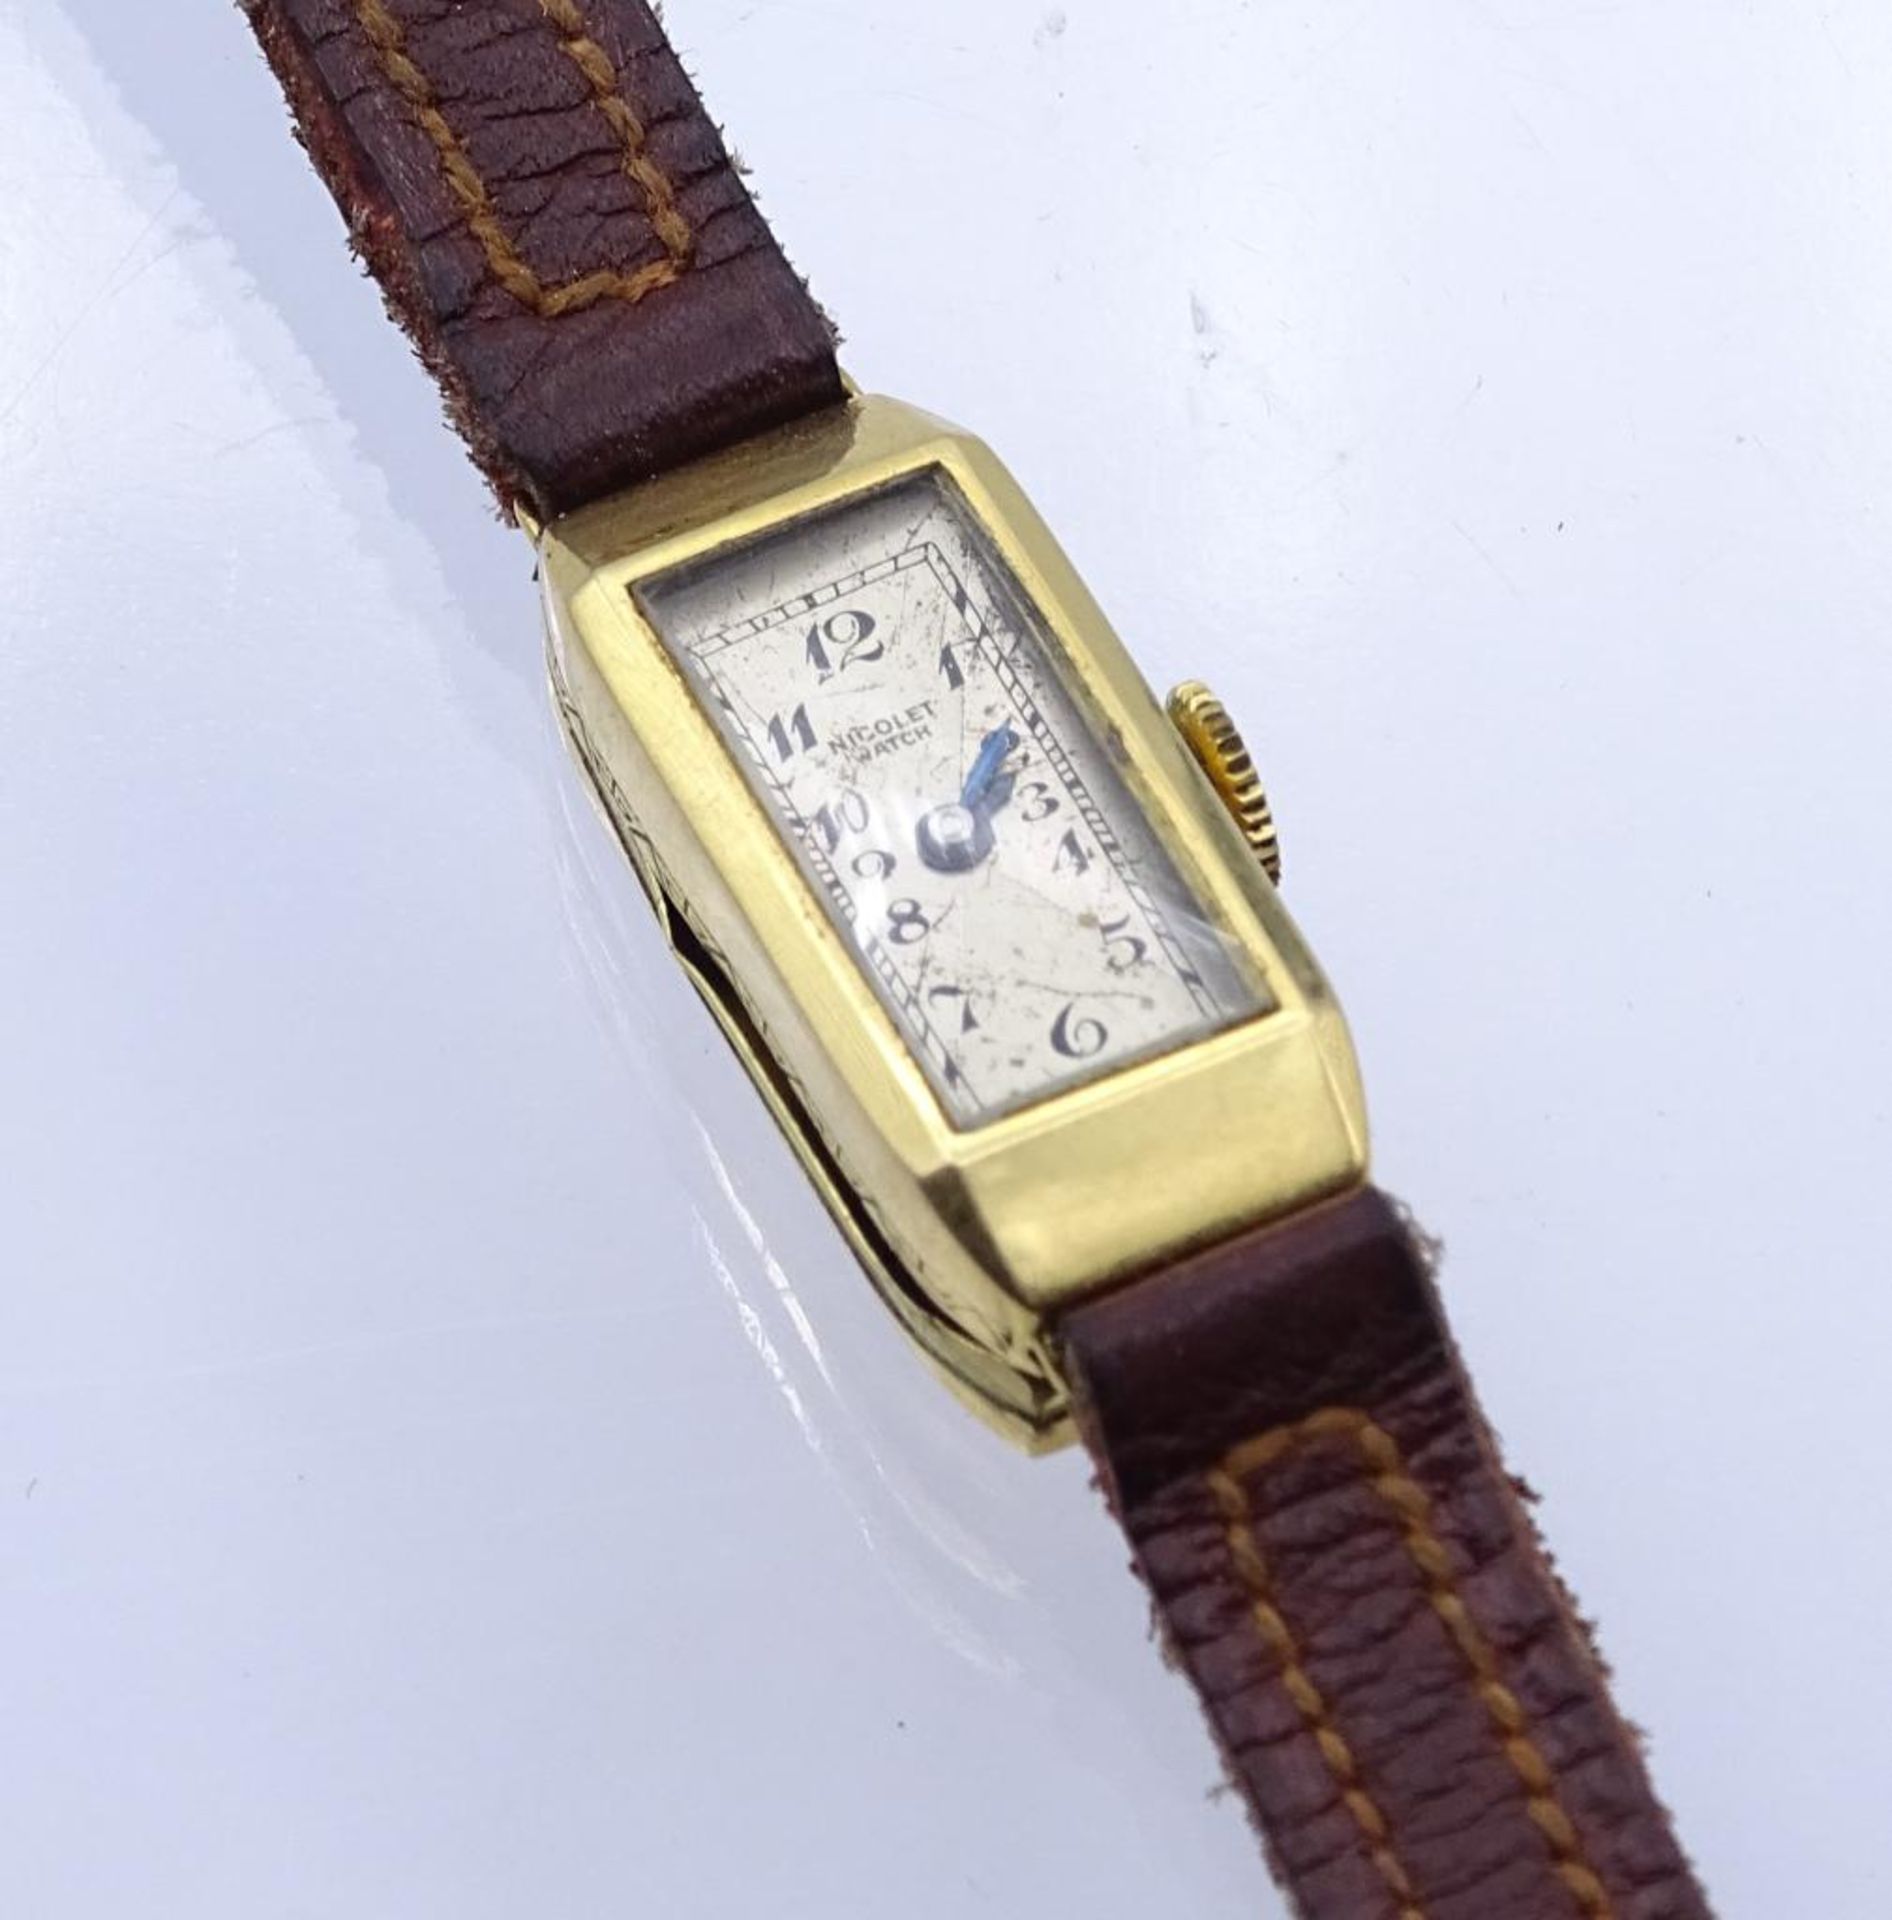 DAU "Nicolet Watch", GG Gehäuse 18K, mechanisch,Werk steht,Gehäuse 2,4x1,1cm,Deckel gedell- - -22.61